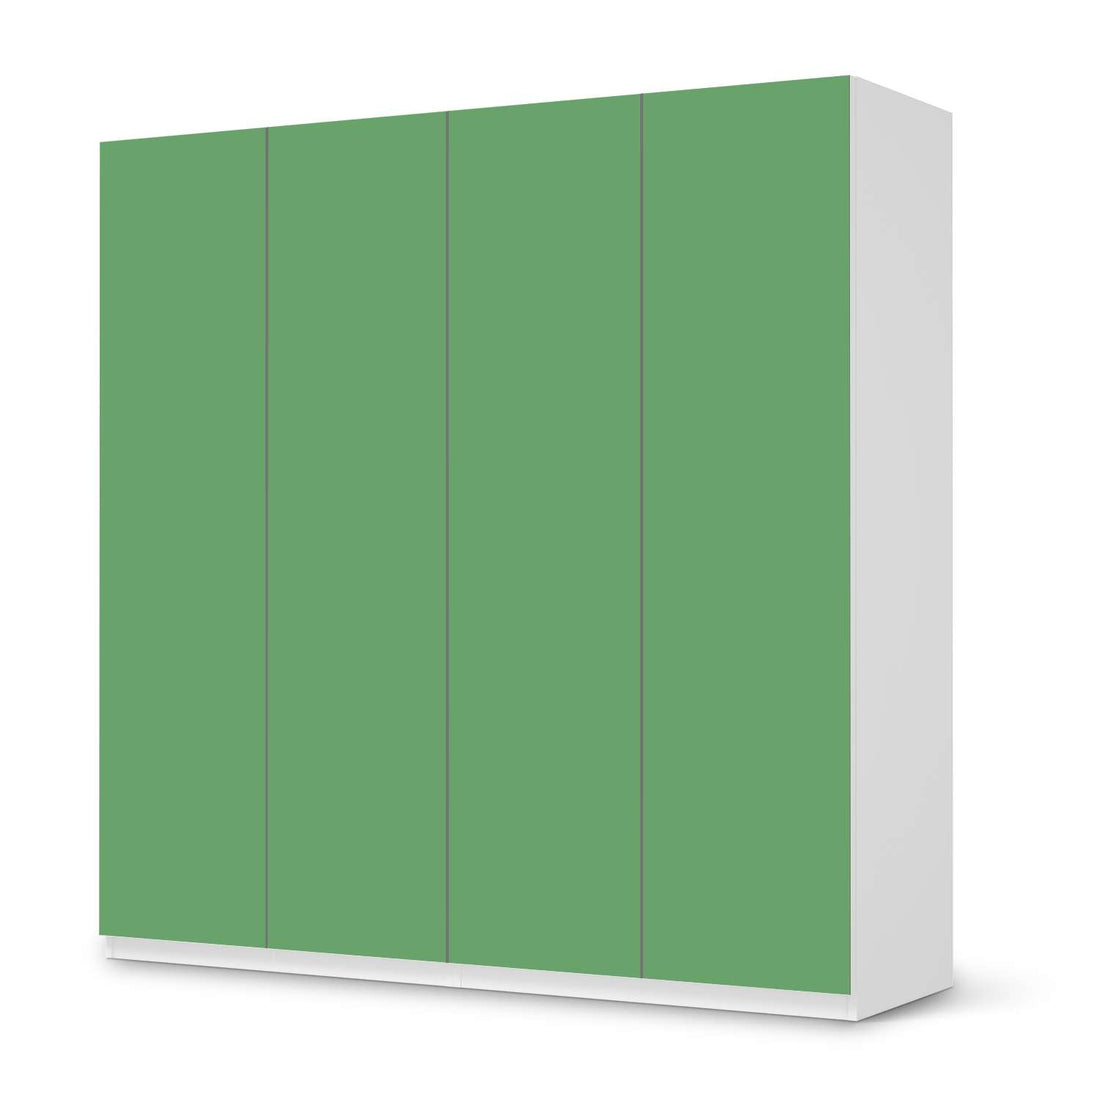 Klebefolie für Schränke Grün Light - IKEA Pax Schrank 201 cm Höhe - 4 Türen - weiss